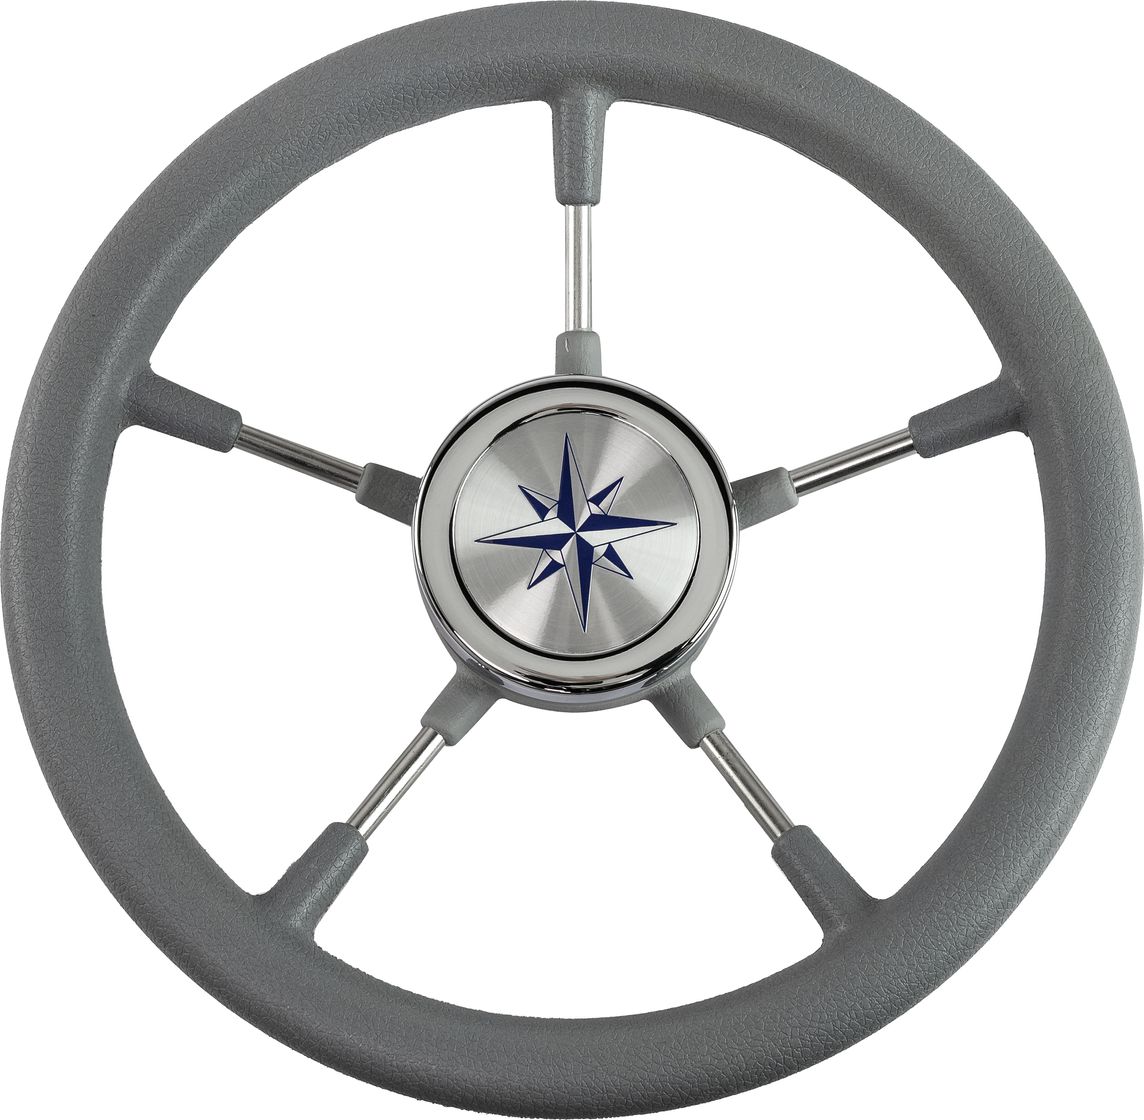 Рулевое колесо RIVA RSL обод серый, спицы серебряные д. 320 мм VN732022-03 рулевое колесо delfino обод серый спицы серебряные д 340 мм vn70401 03